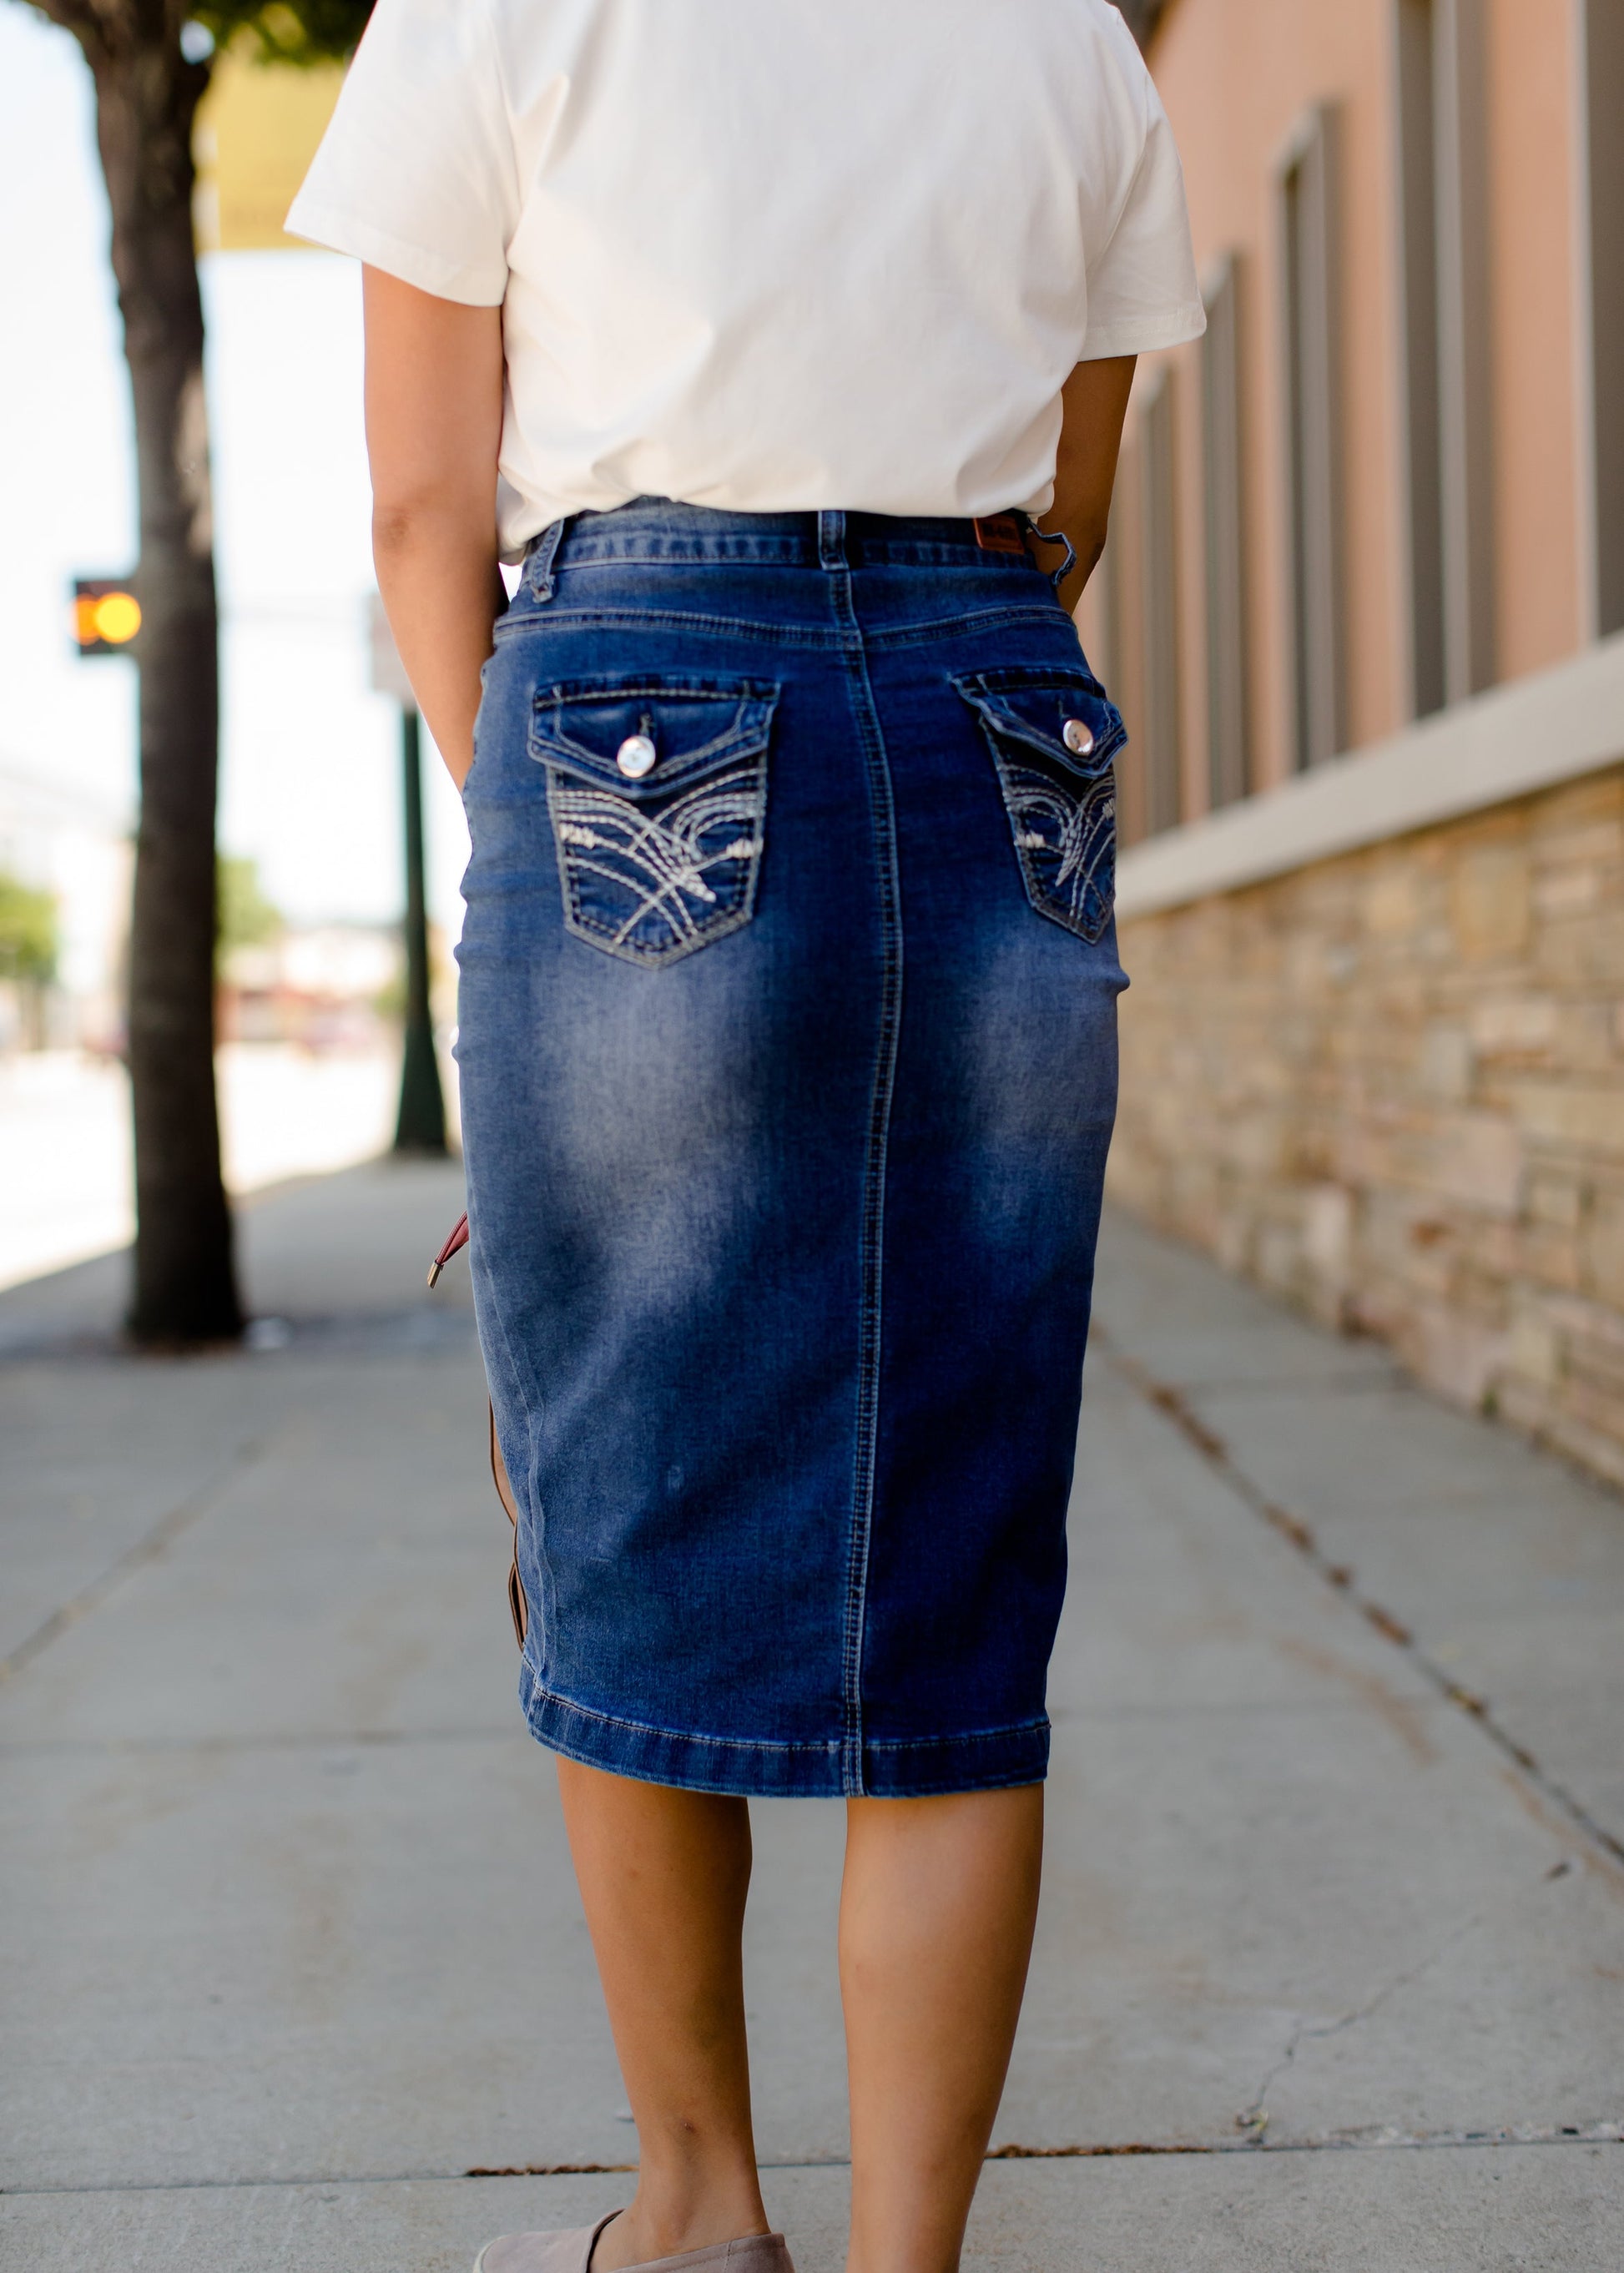 modest midi denim skirt with back pocket detail